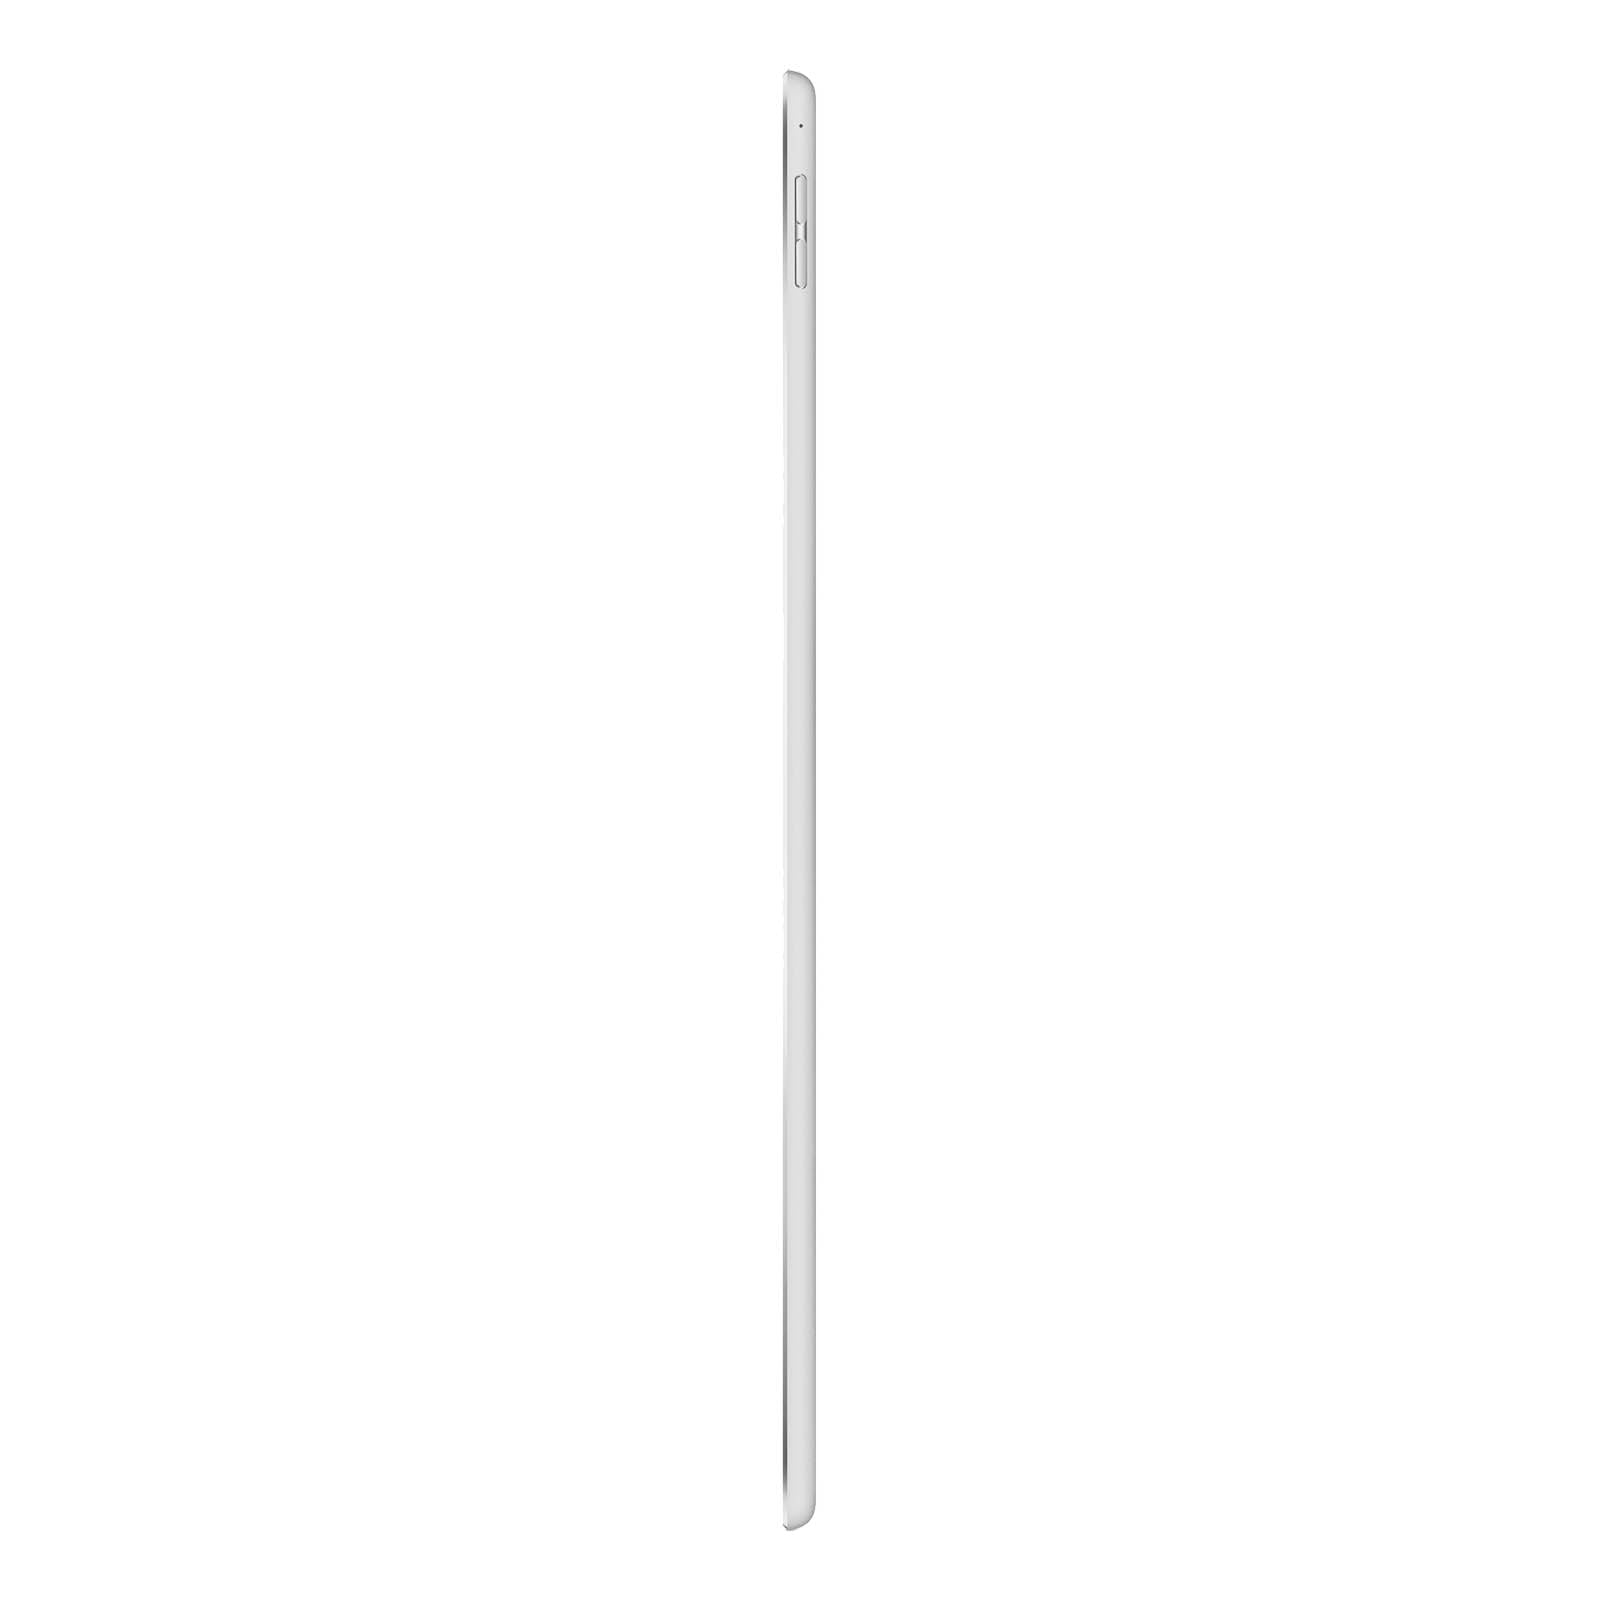 iPad Pro 12.9 Inch 3rd Gen 256GB Silver Pristine - WiFi